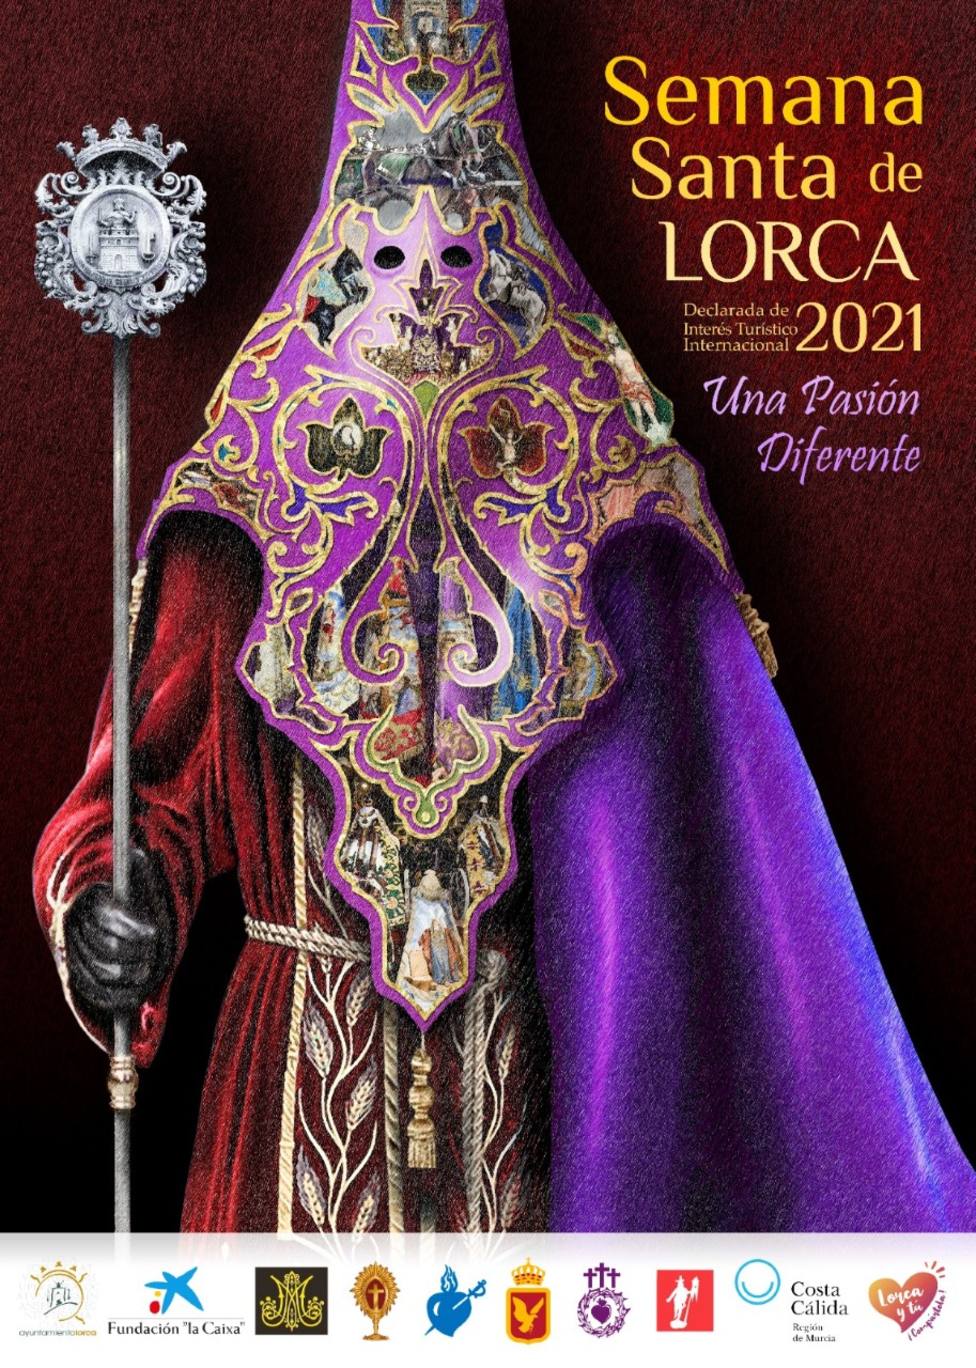 El bordado como protagonista del cartel anunciador de la Semana Santa de Lorca 2021